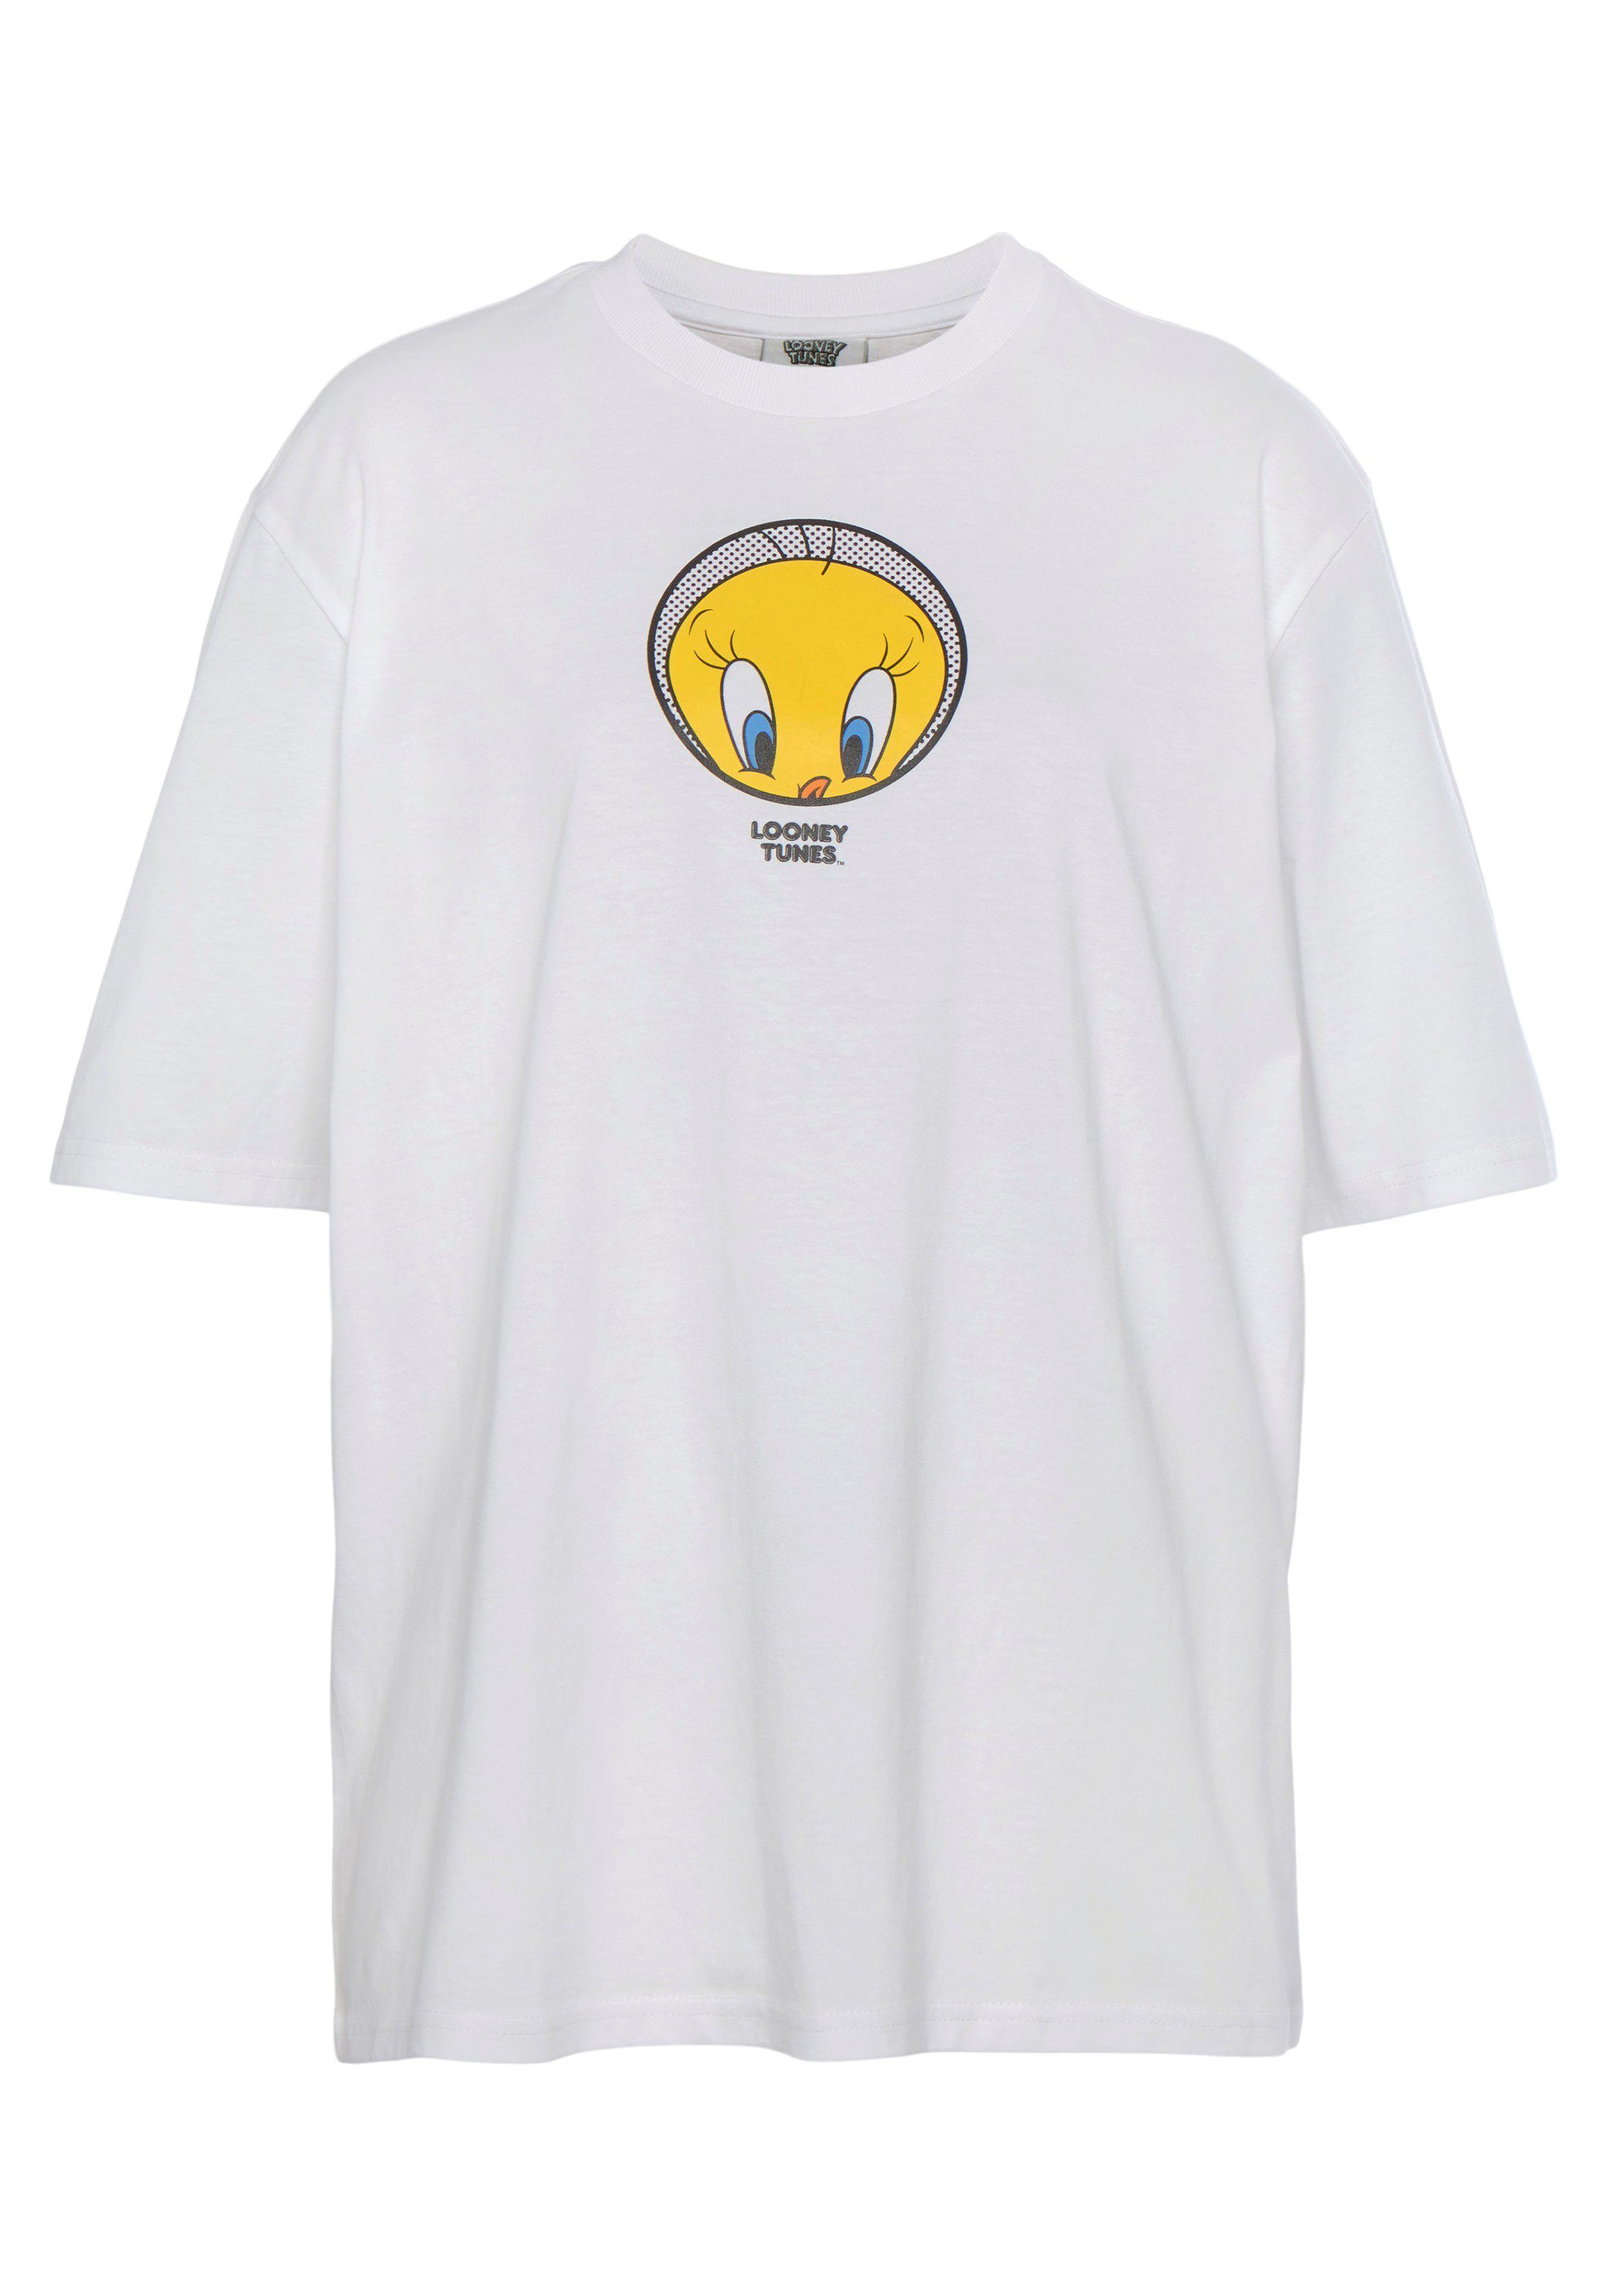 Tweety York white T-Shirt Capelli New T-Shirt